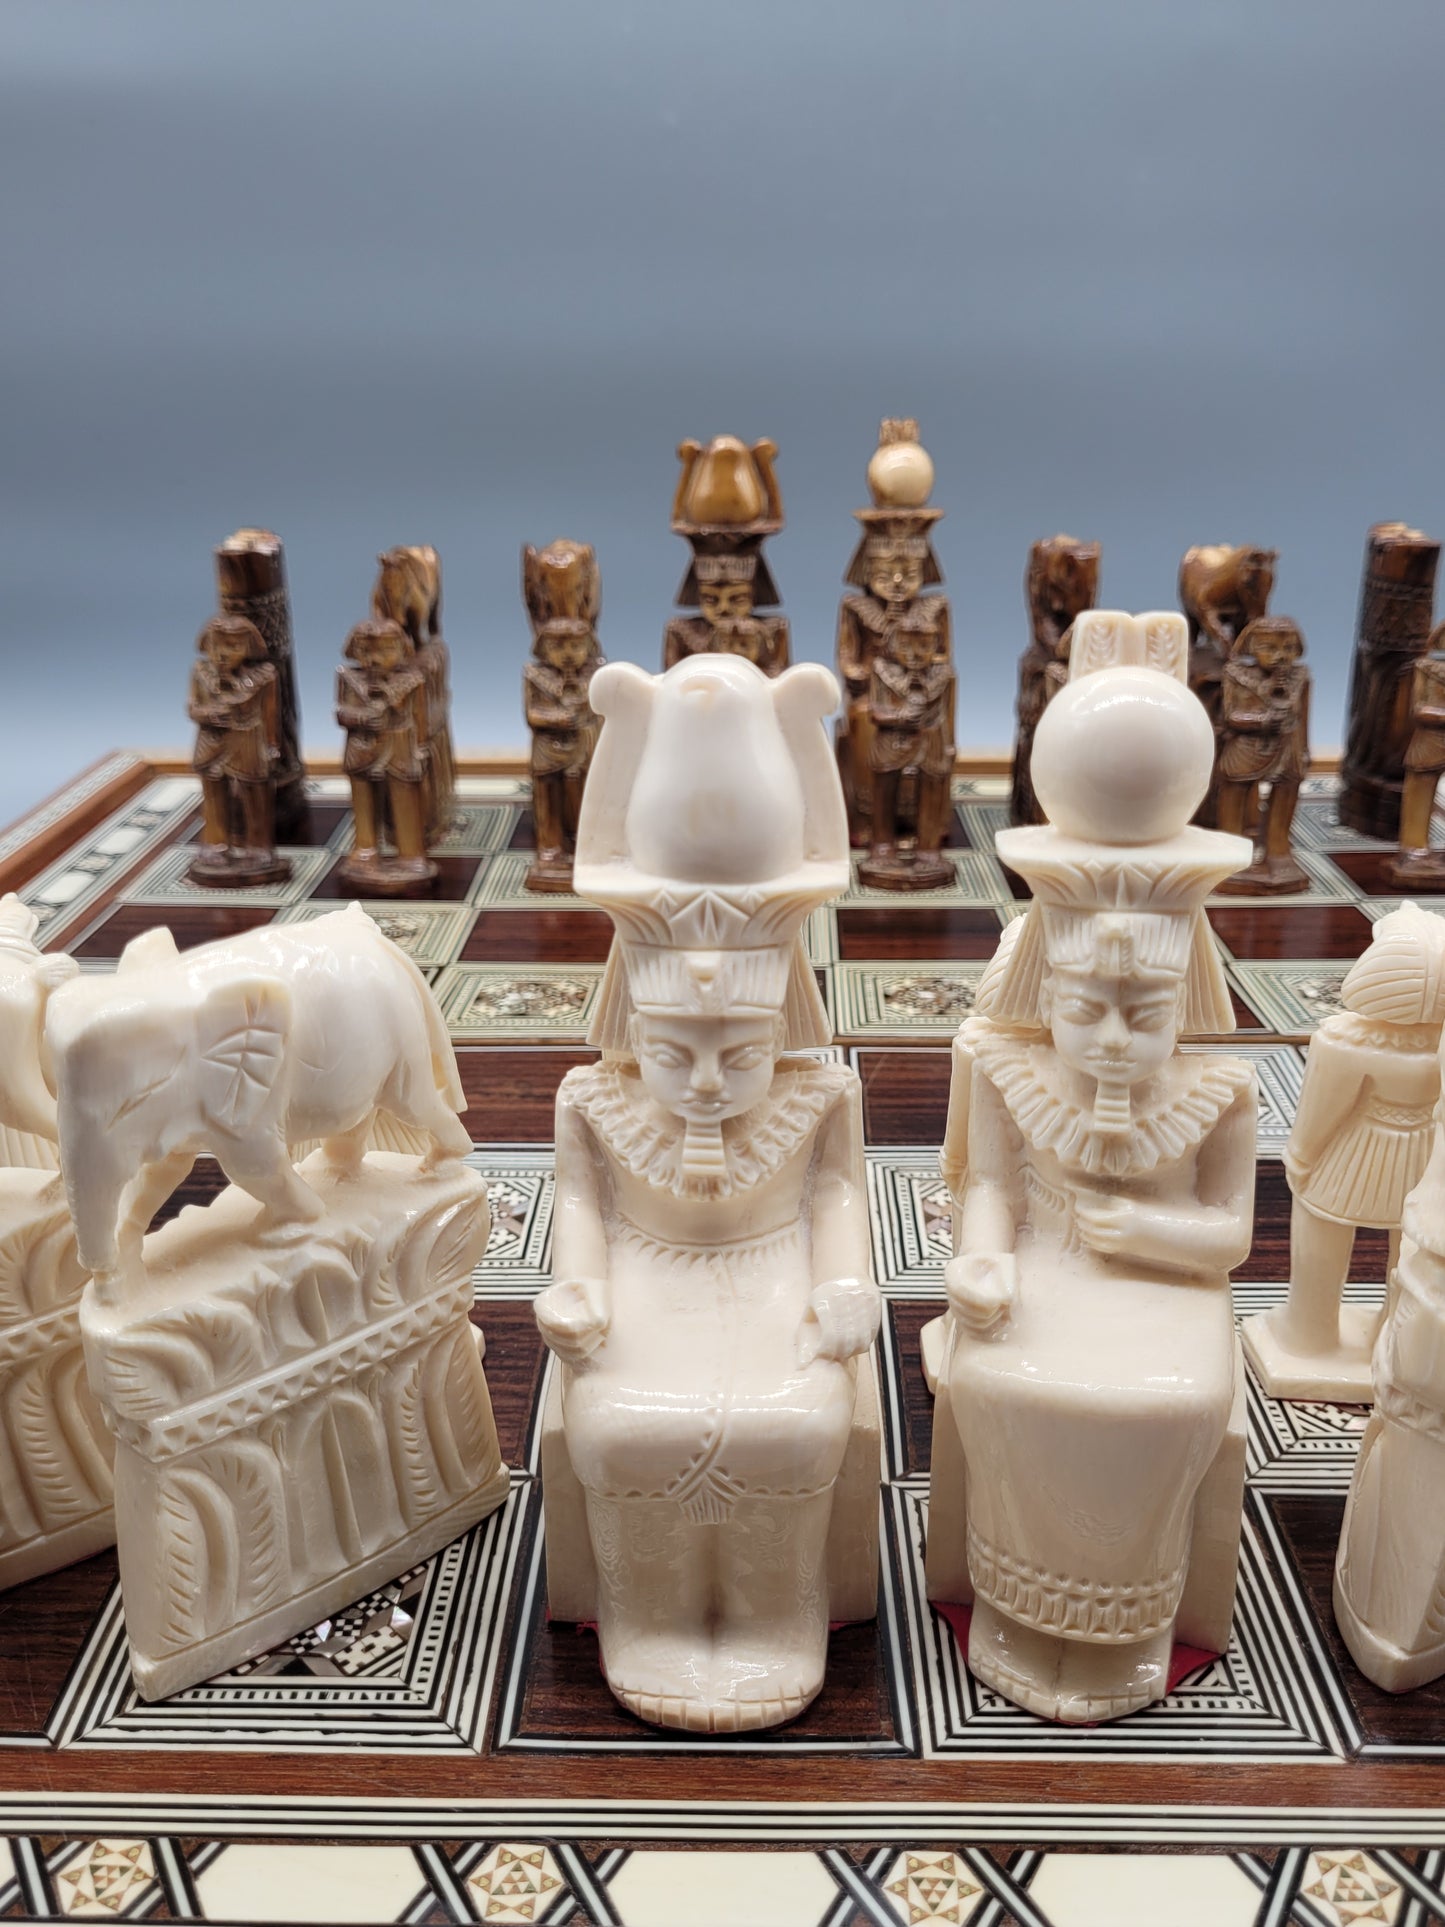 Ägyptisches Handarbeit Schachspiel aus Kamelknochen und Perlmutt